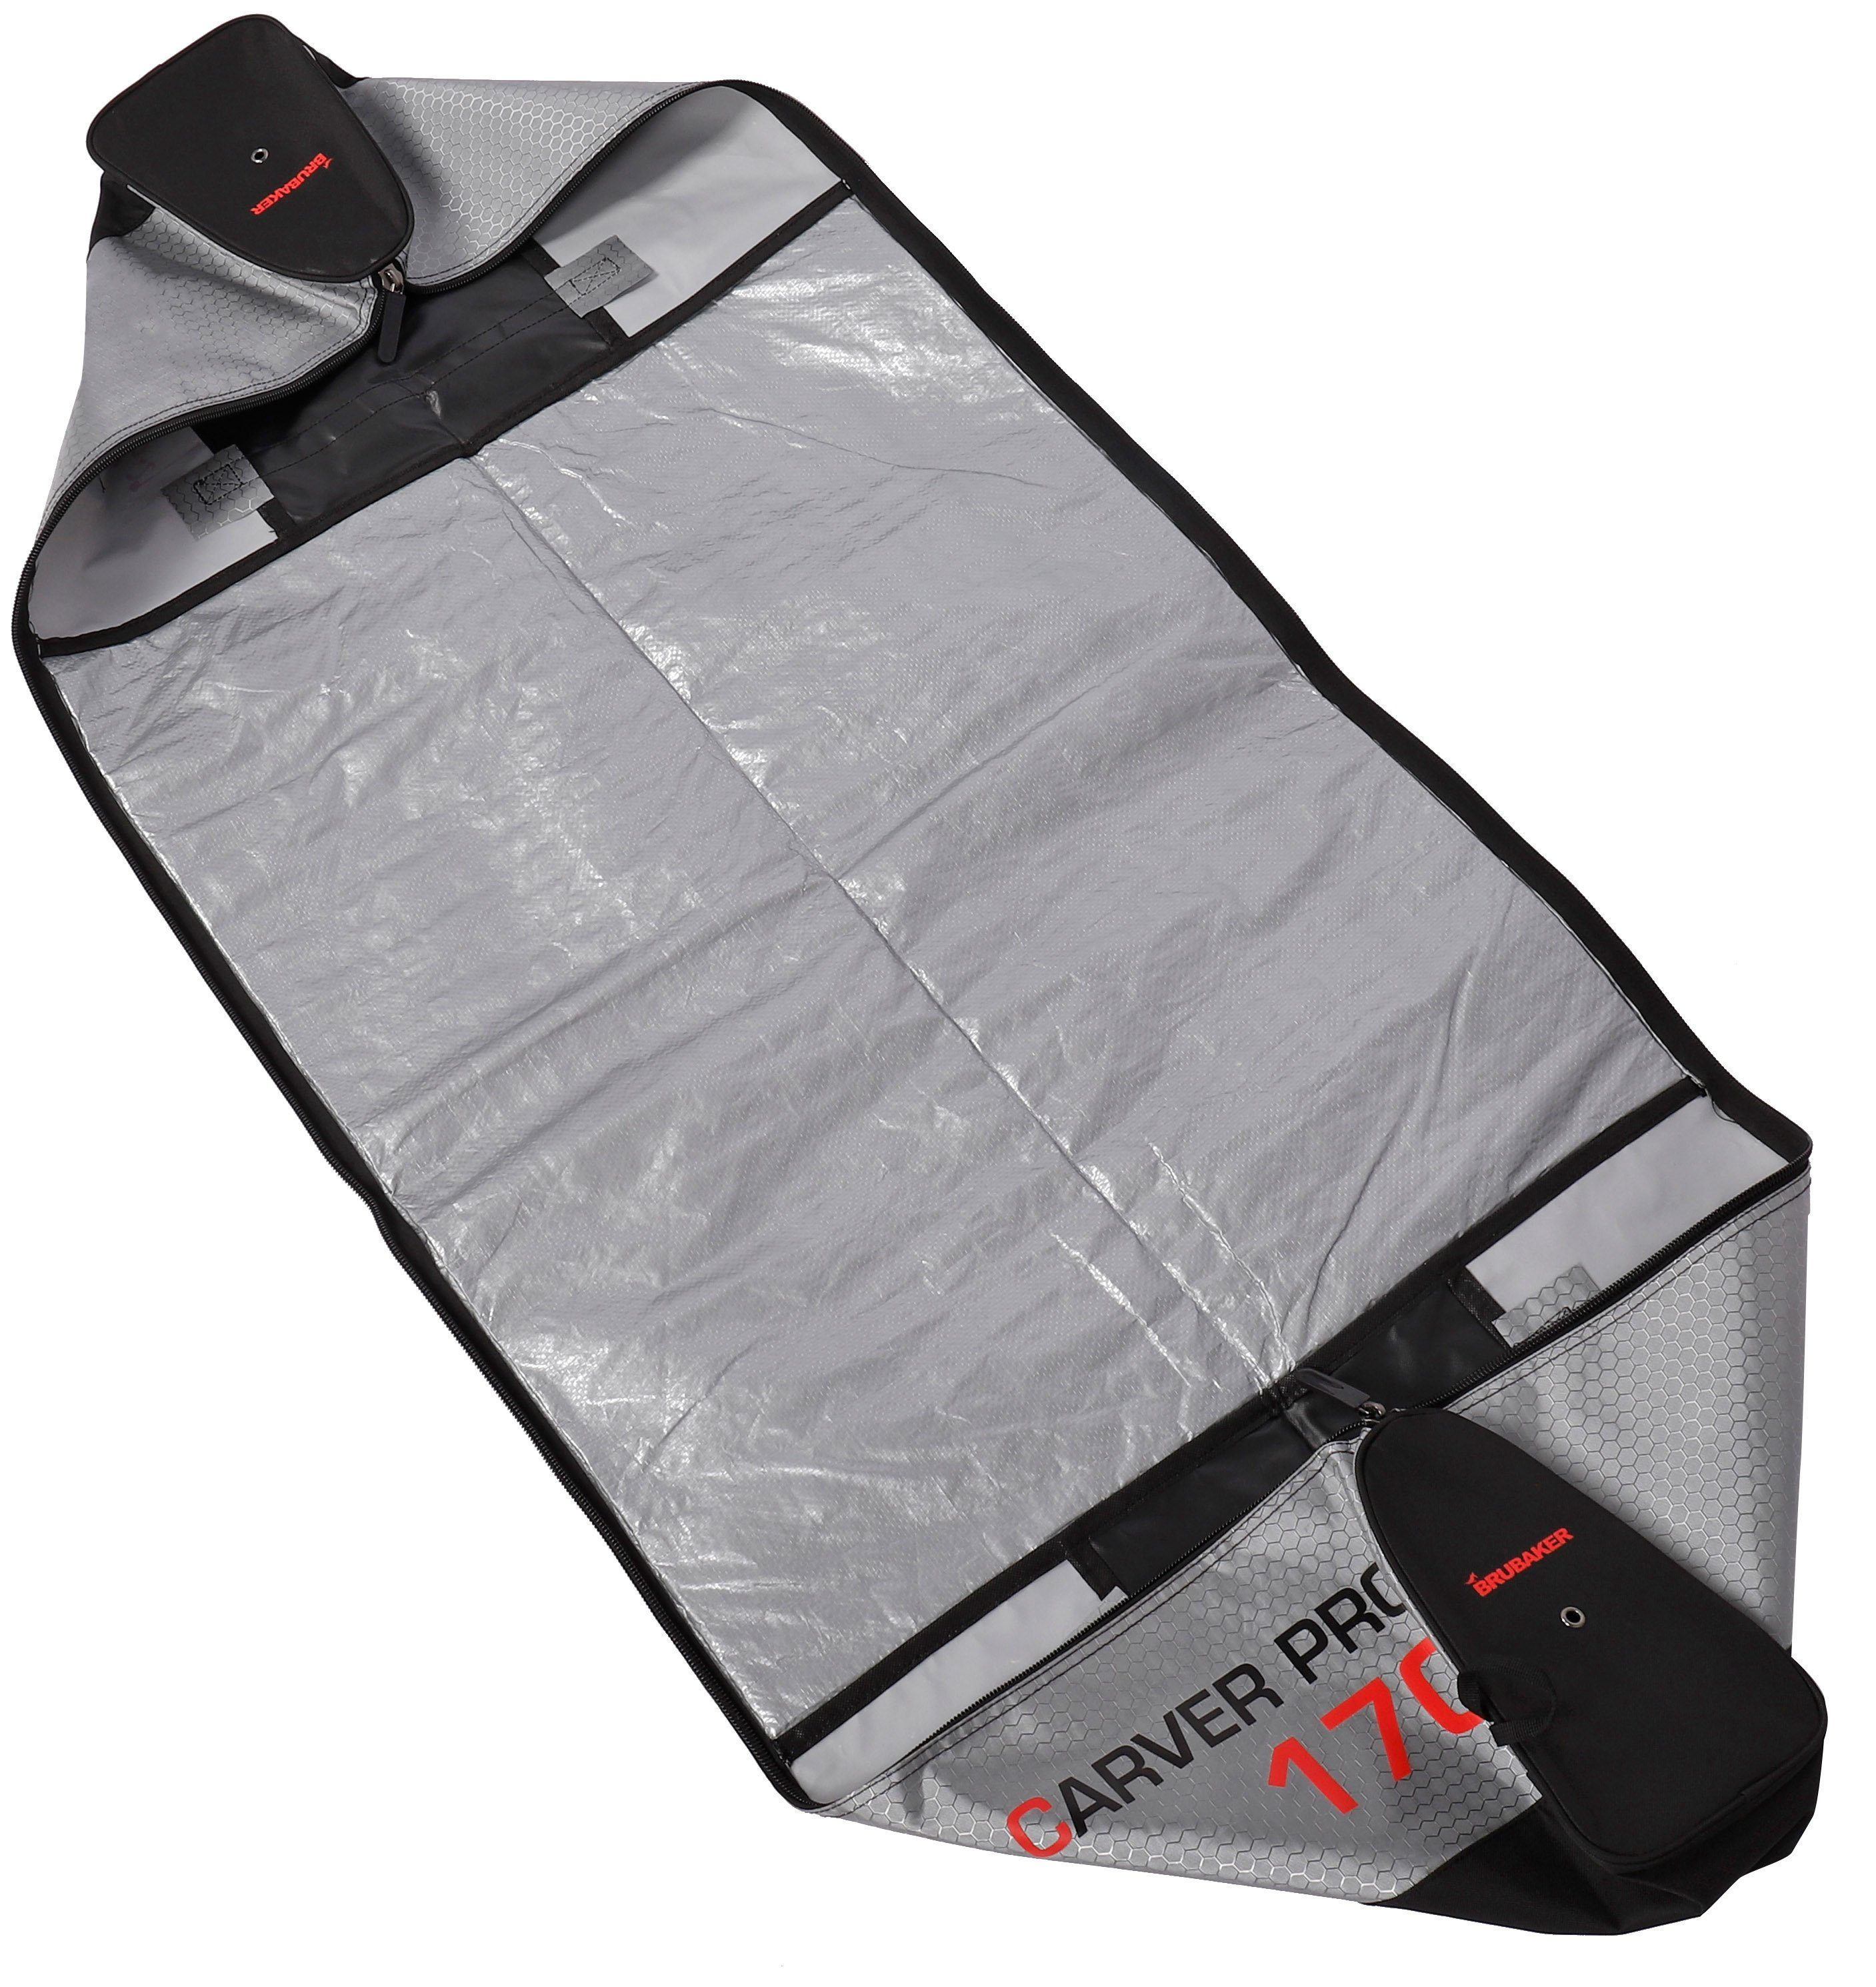 BRUBAKER Sporttasche Ski Skistöcke, für Pro Skibag Skier Tec Zipperverschluss, und und reißfest Tasche mit Skisack gepolsterter Carver Skitasche (1-tlg., schnittfest)